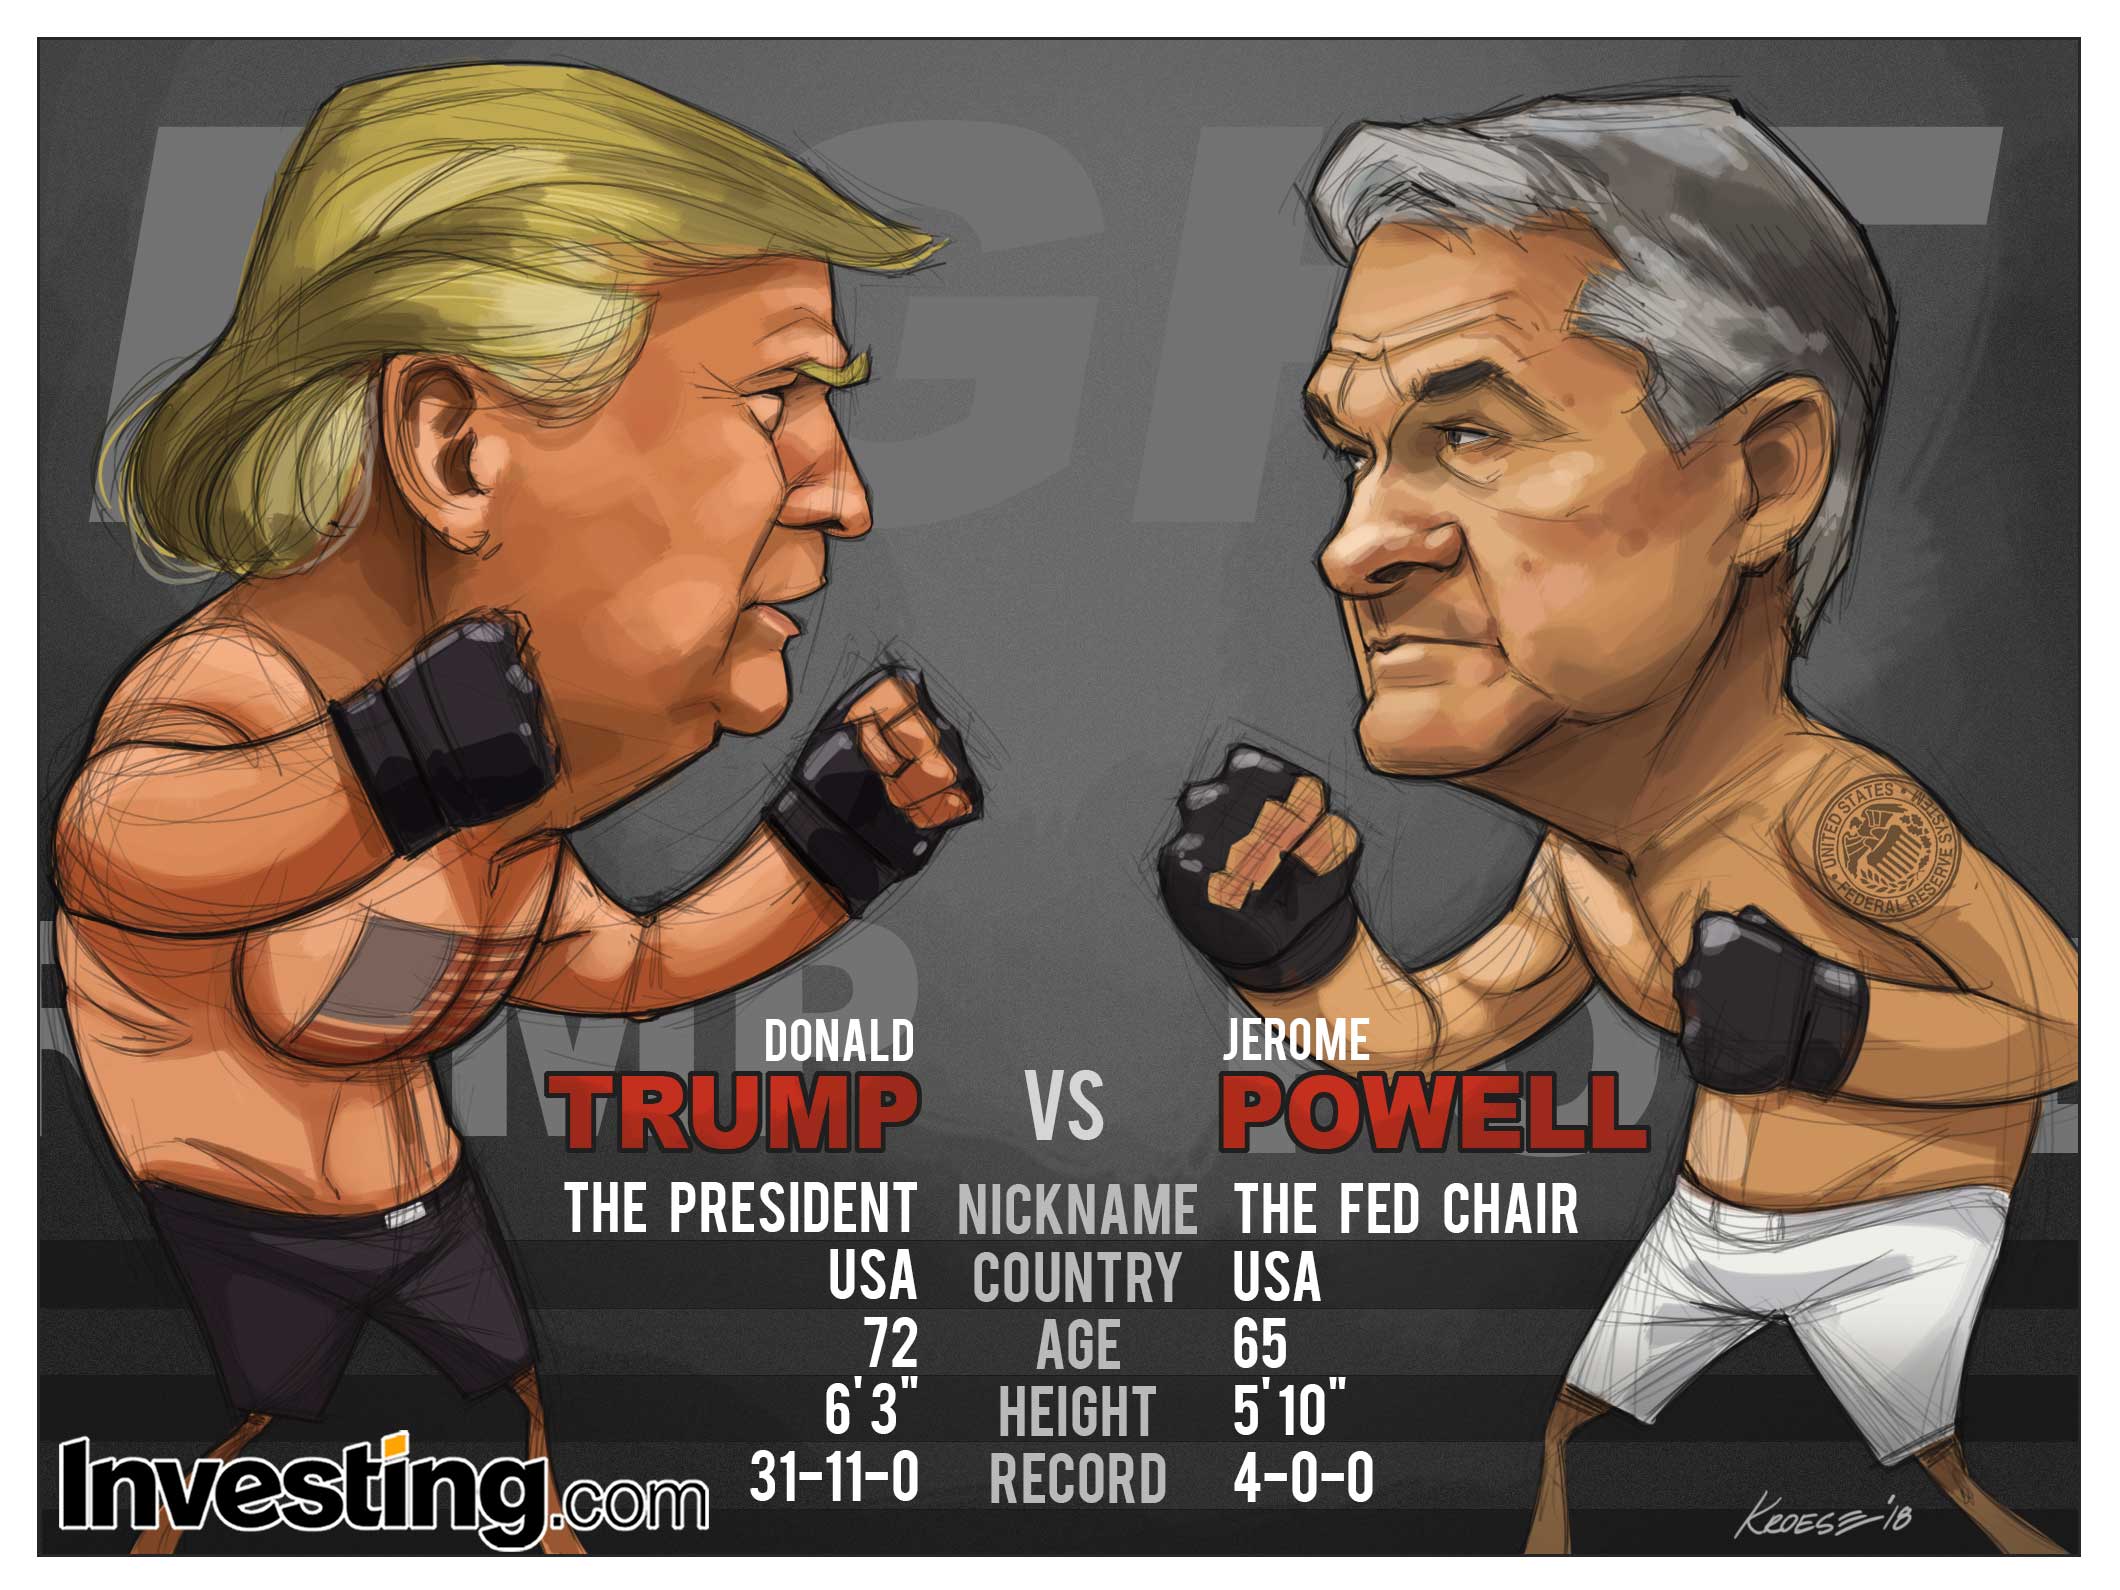 Trump vs Powell gevecht is het belangrijkste evenement van de week